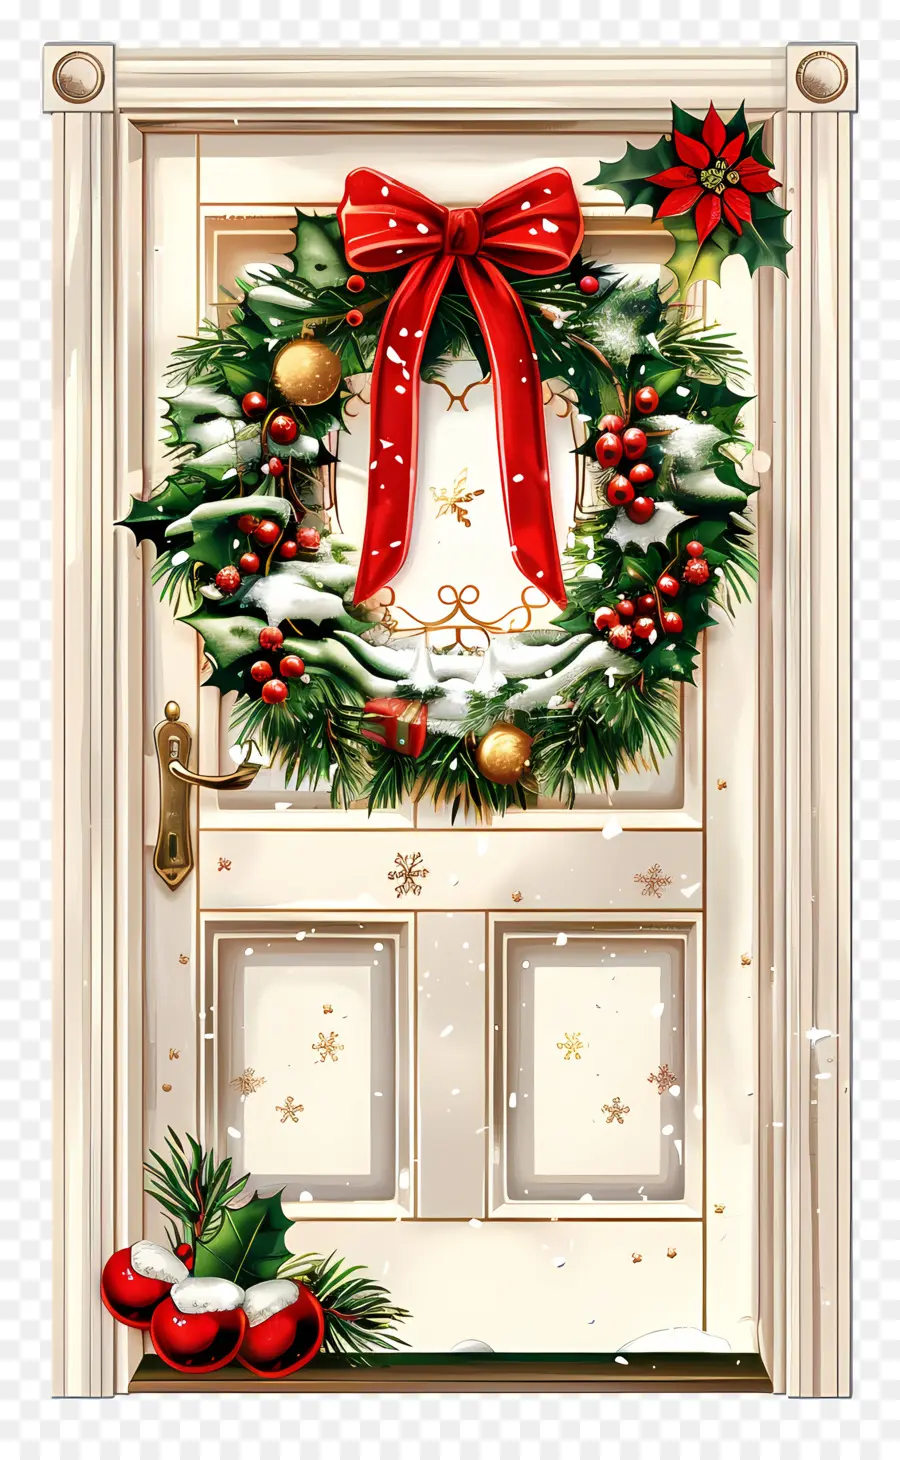 Weihnachtsdekoration - Festliche weiße Tür mit Weihnachtsdekorationen, Schnee